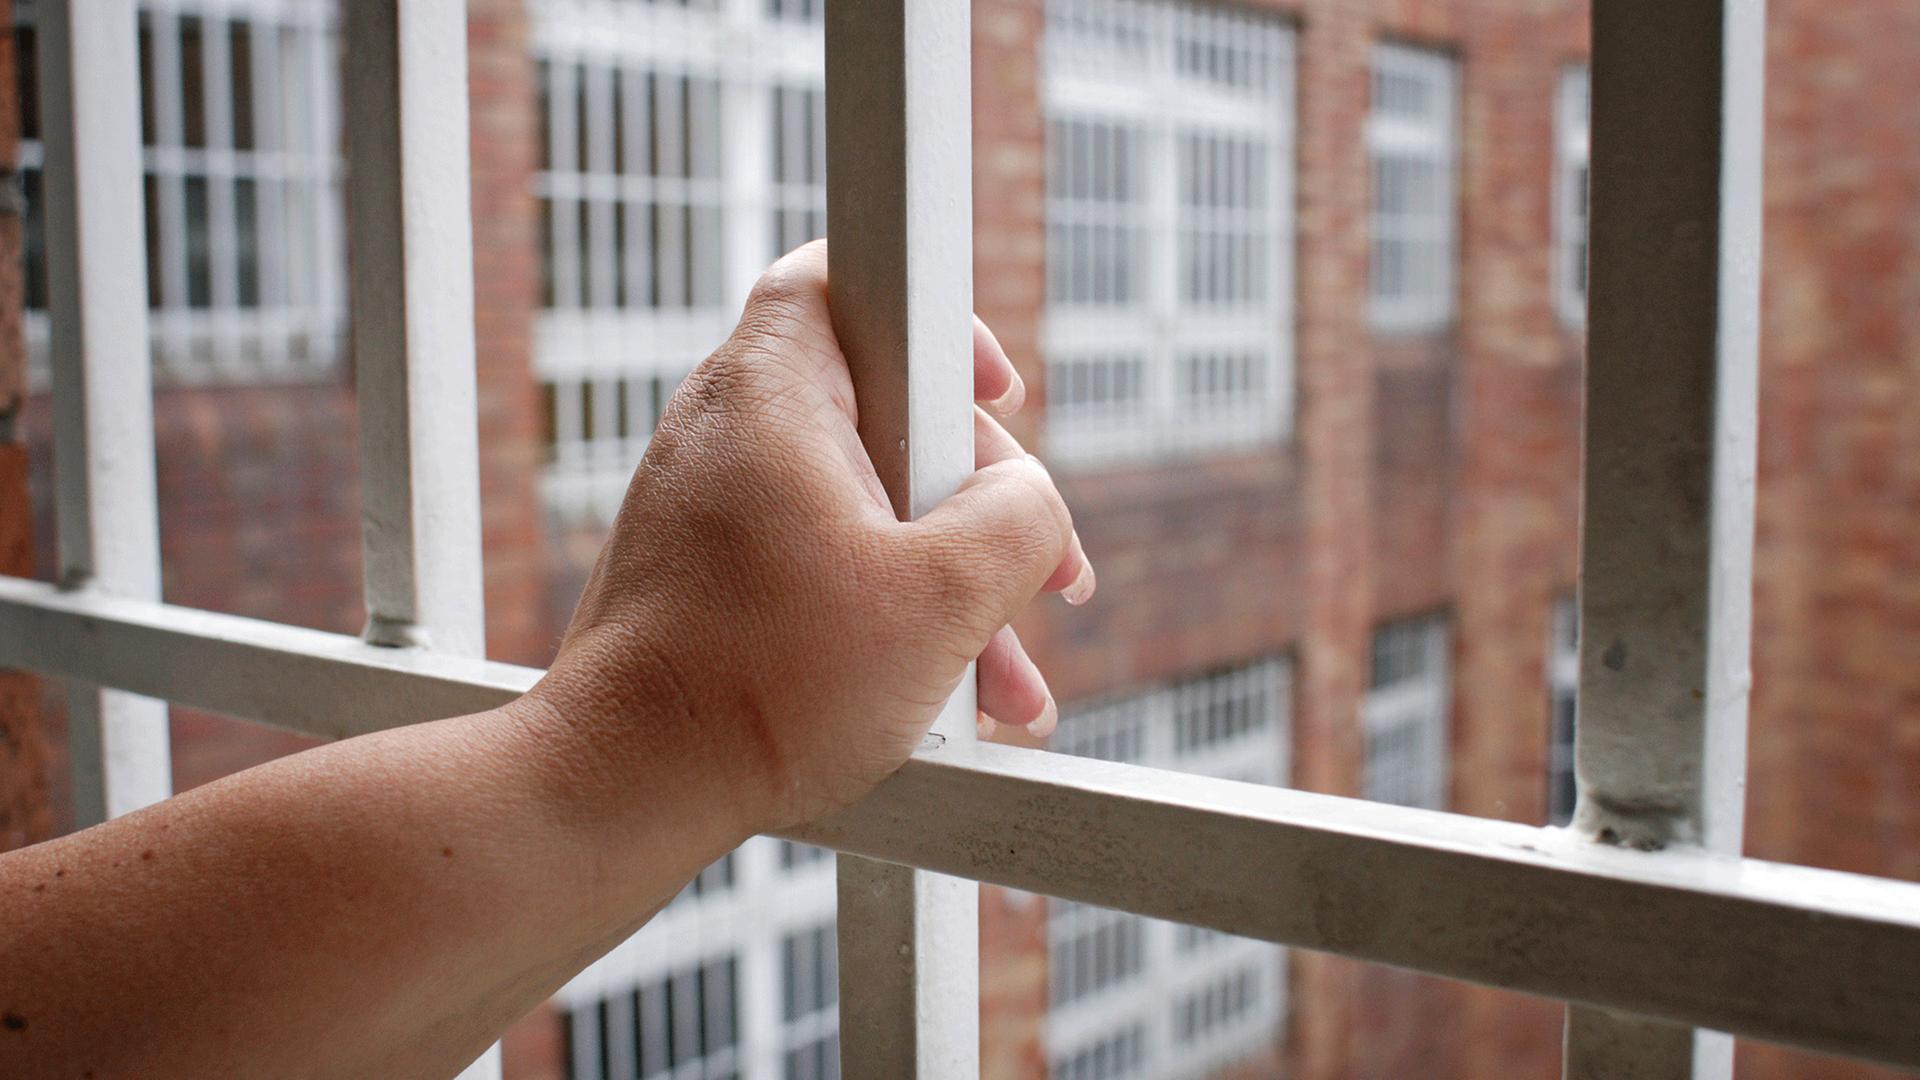 Ersatzfreiheitsstrafen werden seit Jahren kontrovers diskutiert. Zu sehen: Eine Hand umfasst das Gitter an einem Gefängnisfenster mit Blick auf einen Innenhof